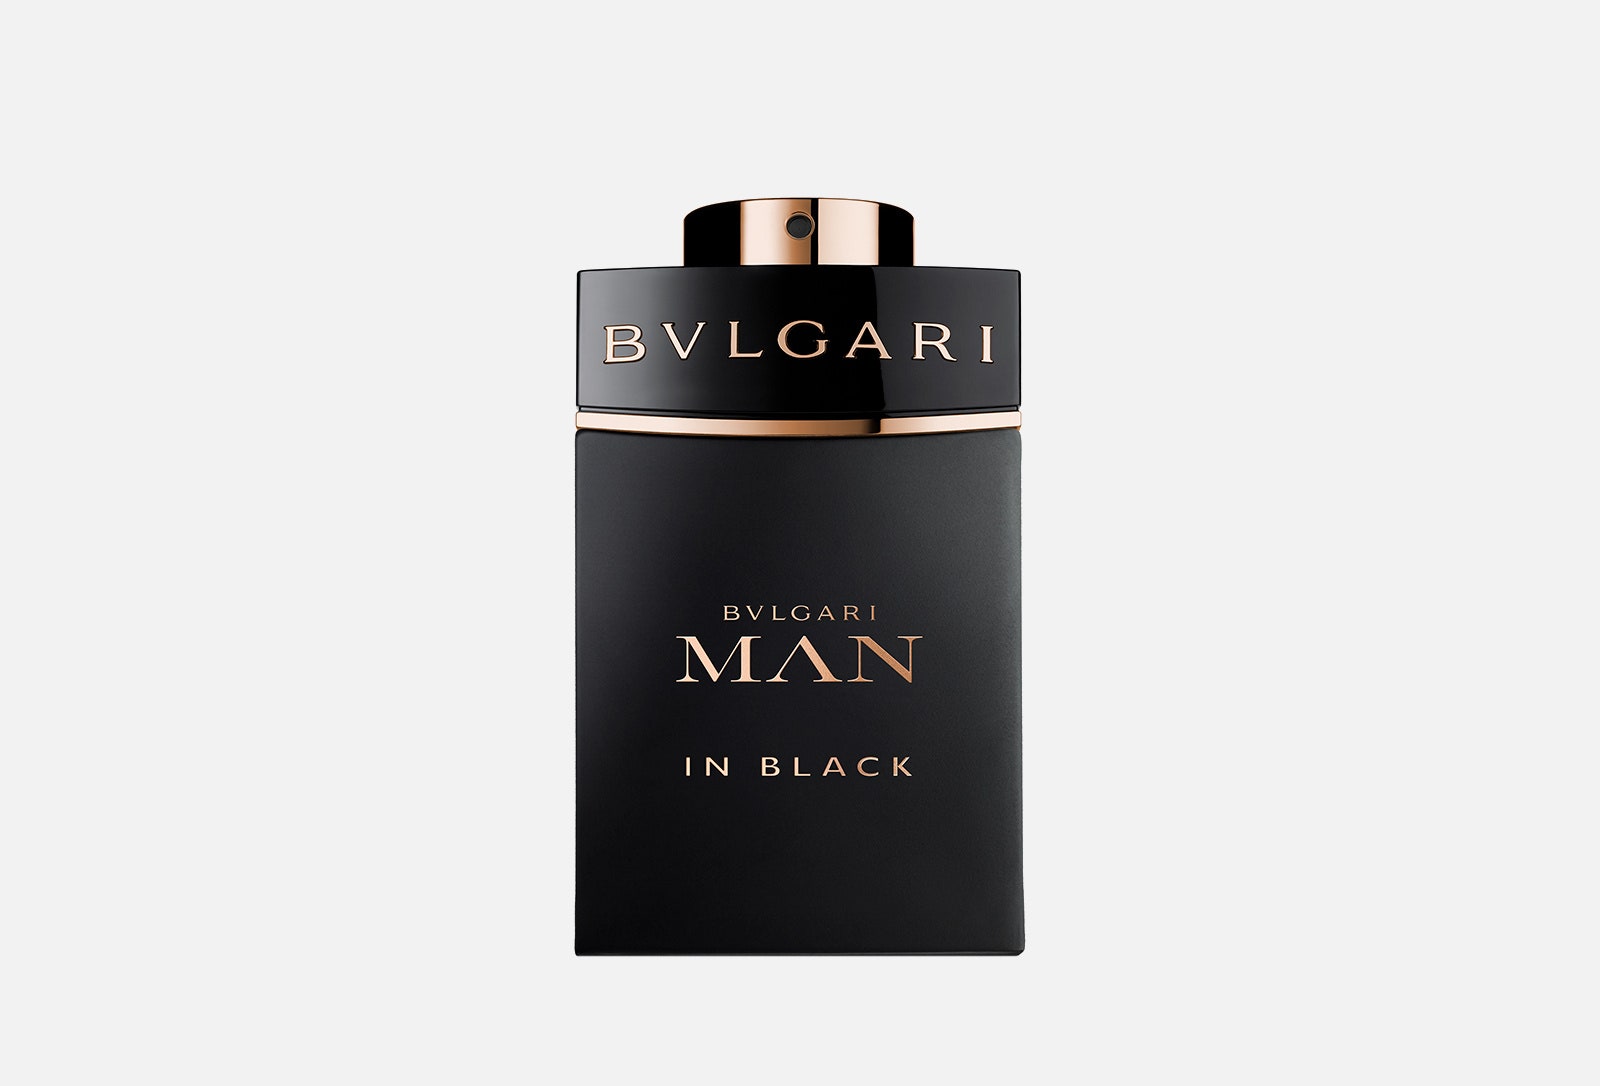 Какой парфюм редакторы Glamour подарят своим любимым мужчинам на 23 февраля